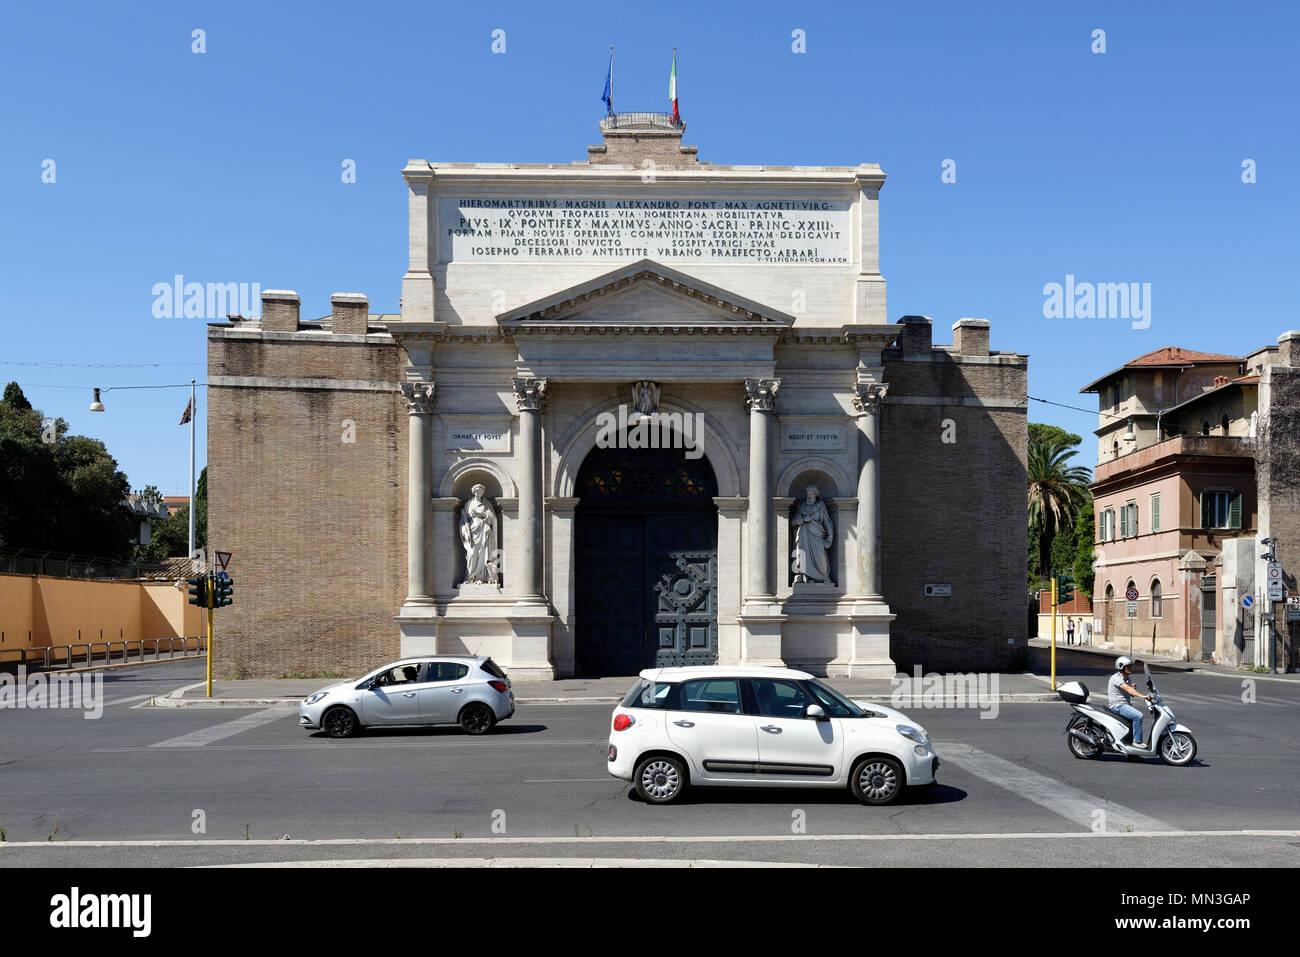 La breccia di Porta Pia gate esterno in Piazzale di Porta Pia, Roma,  Italia. La porta esterna è stata costruita nel 1868 durante il regno di  Papa Pio IX e oggi è